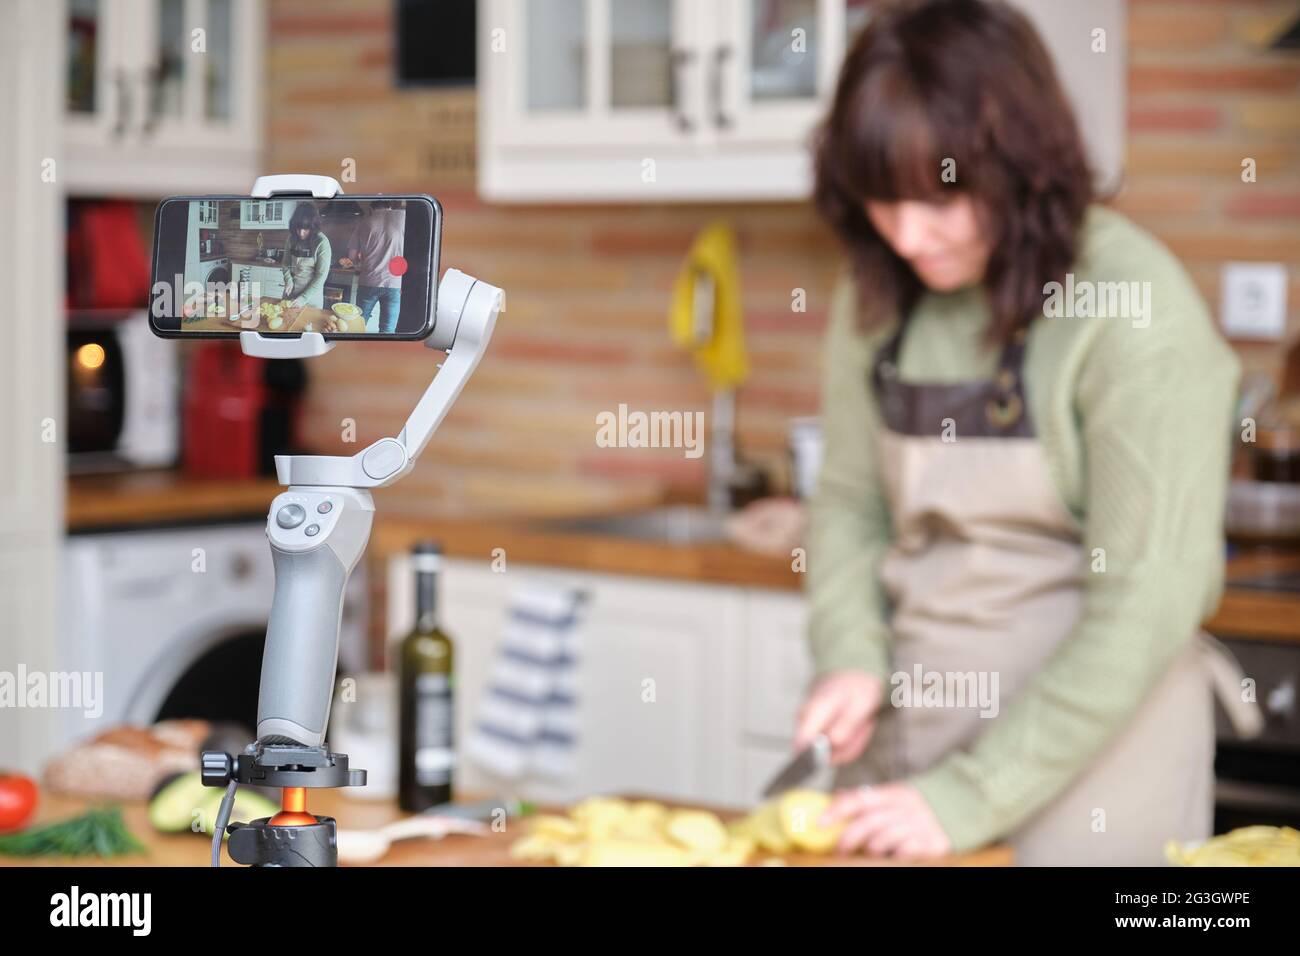 Une jeune femme coupe des pommes de terre et enregistre une vidéo avec son smartphone pour sa chaîne de cuisine. Créateur de contenu et influenceur. Banque D'Images